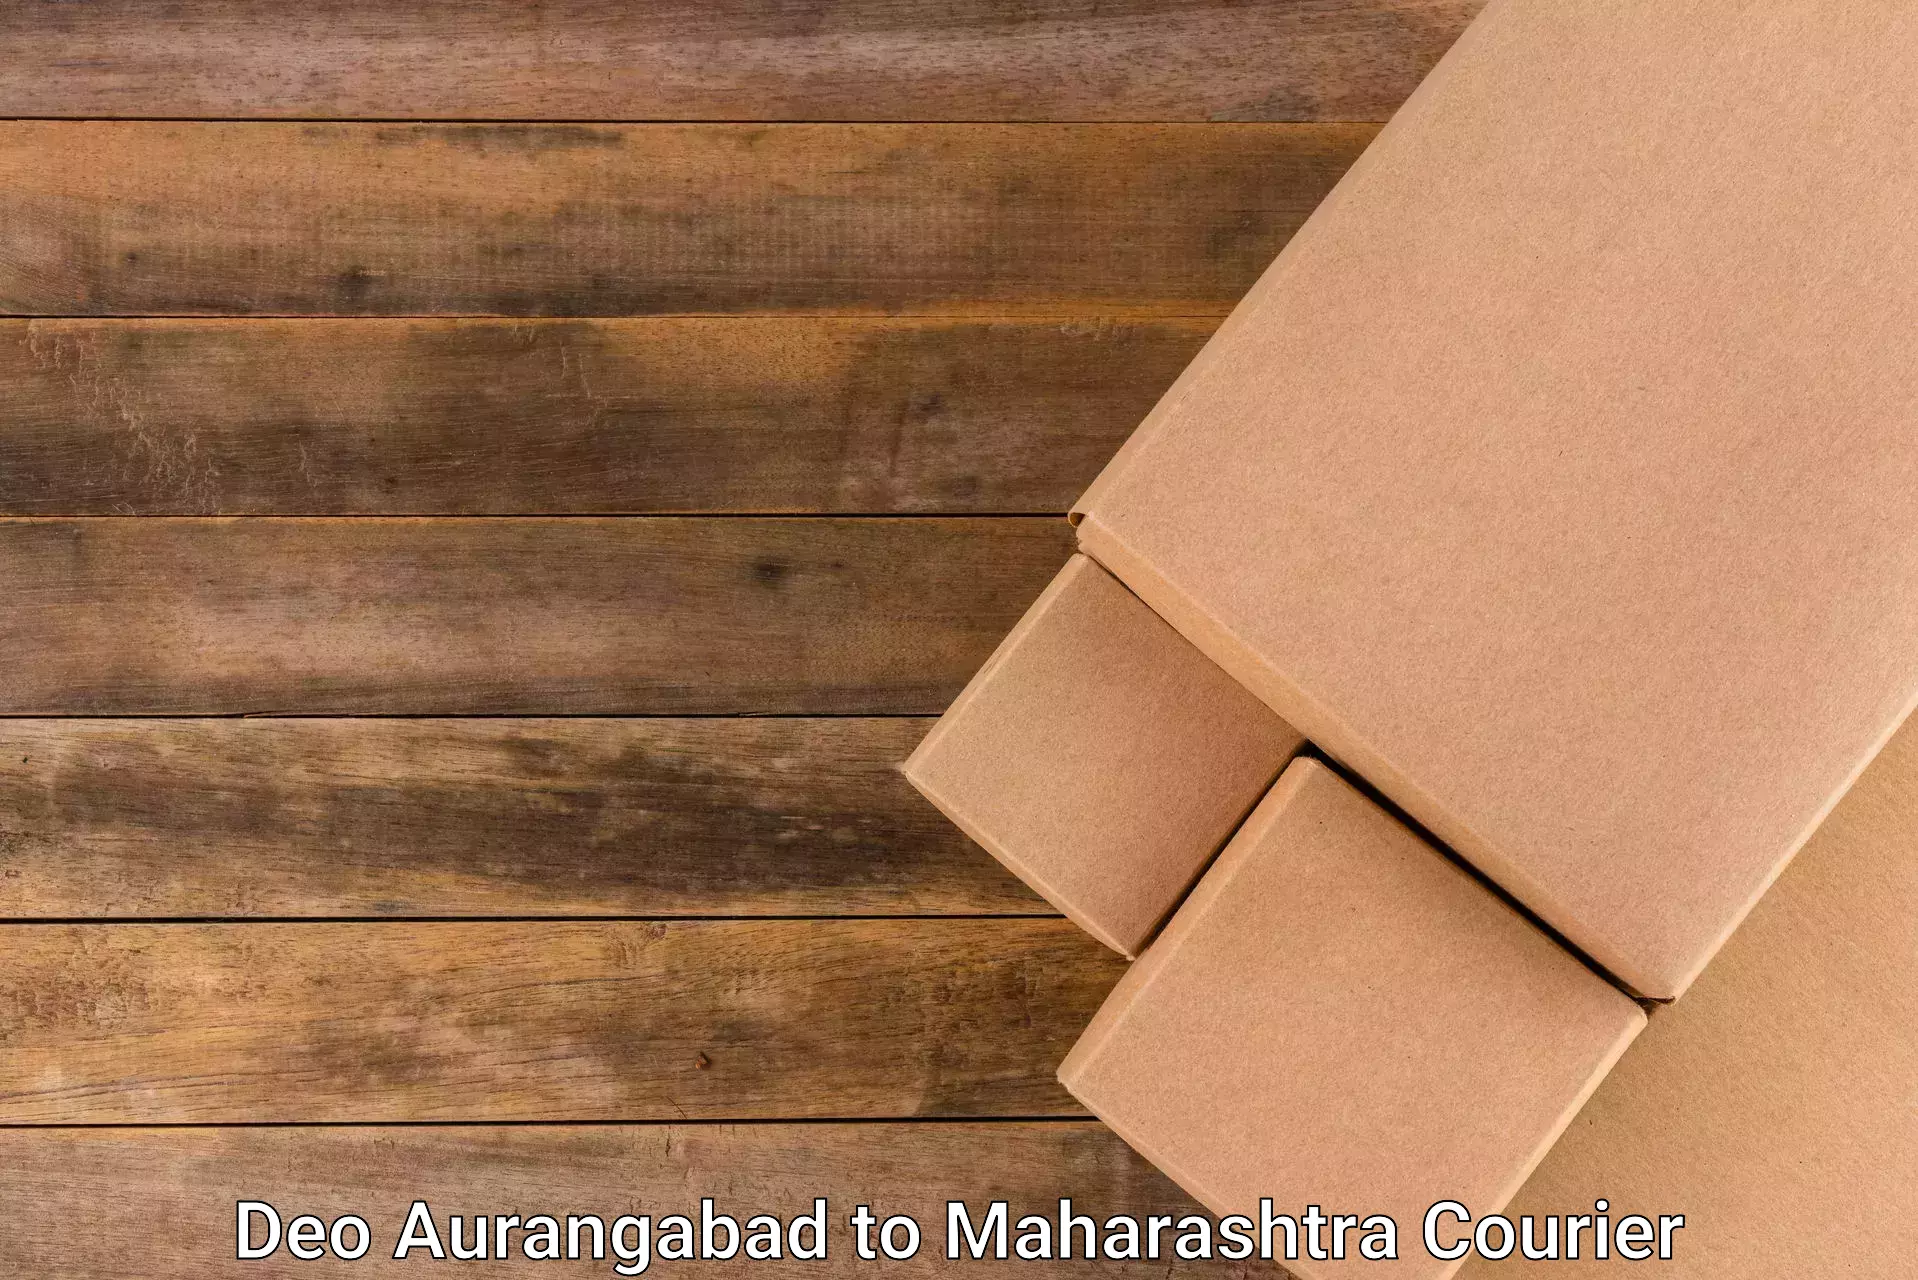 Expedited parcel delivery Deo Aurangabad to Ramtek